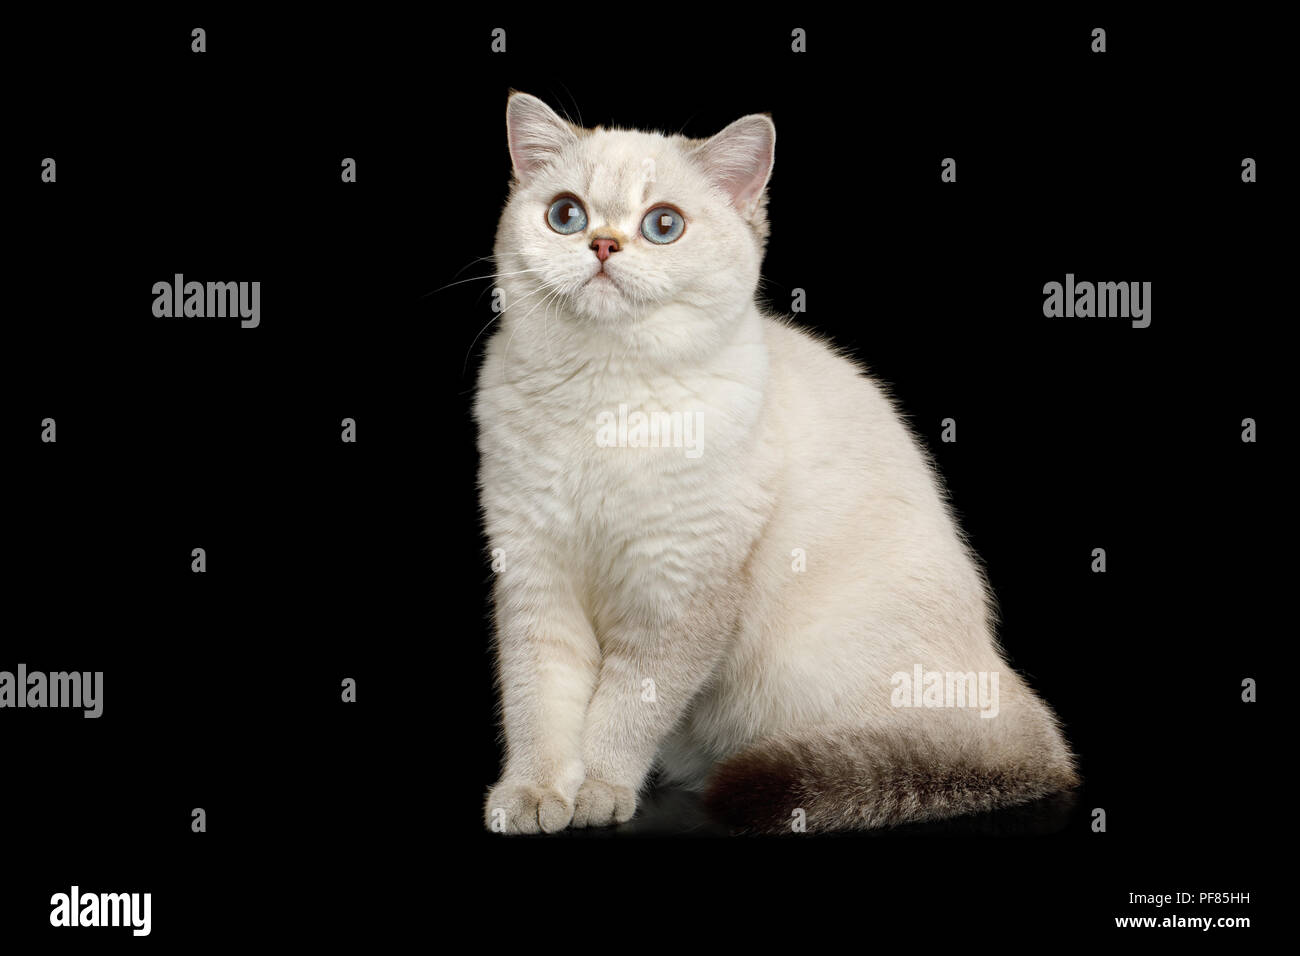 Adorable raza Británico gato mágico color blanco con ojos azules, sentado sobre fondo negro aislado Foto de stock